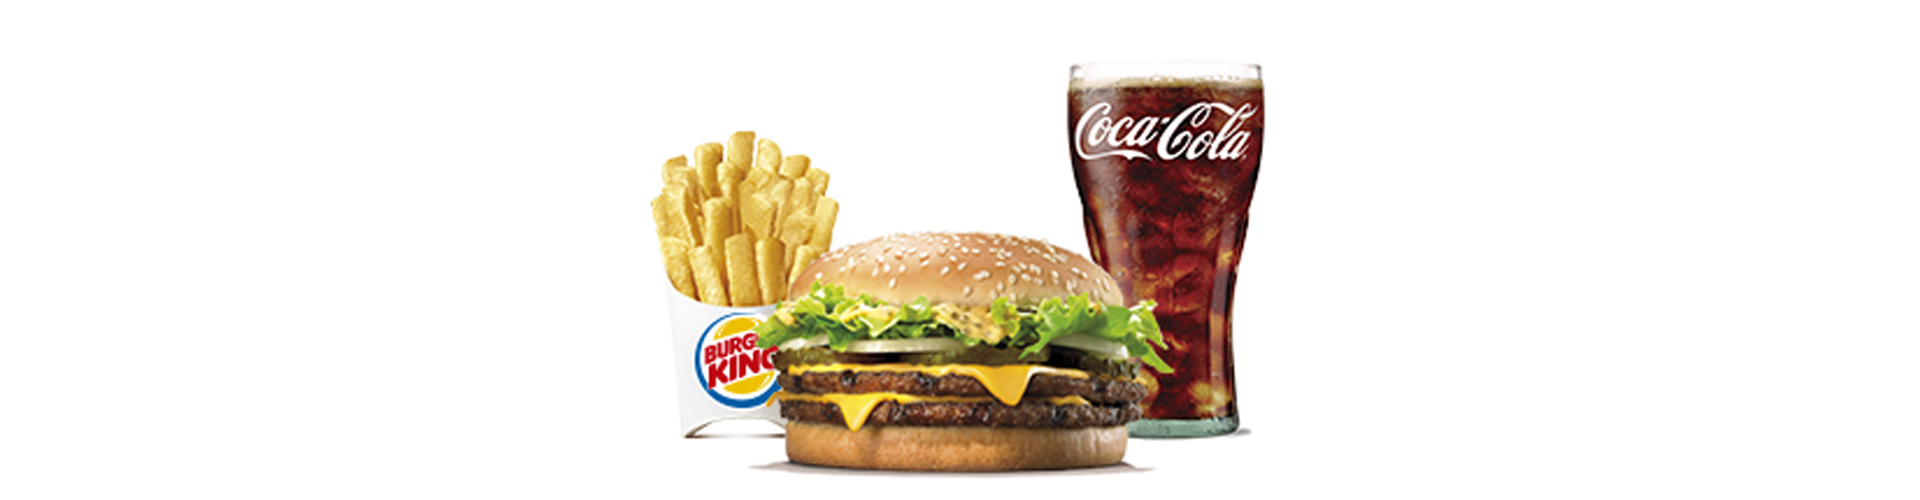 menu-big-king-burgerking-40001712-cerveza-aros